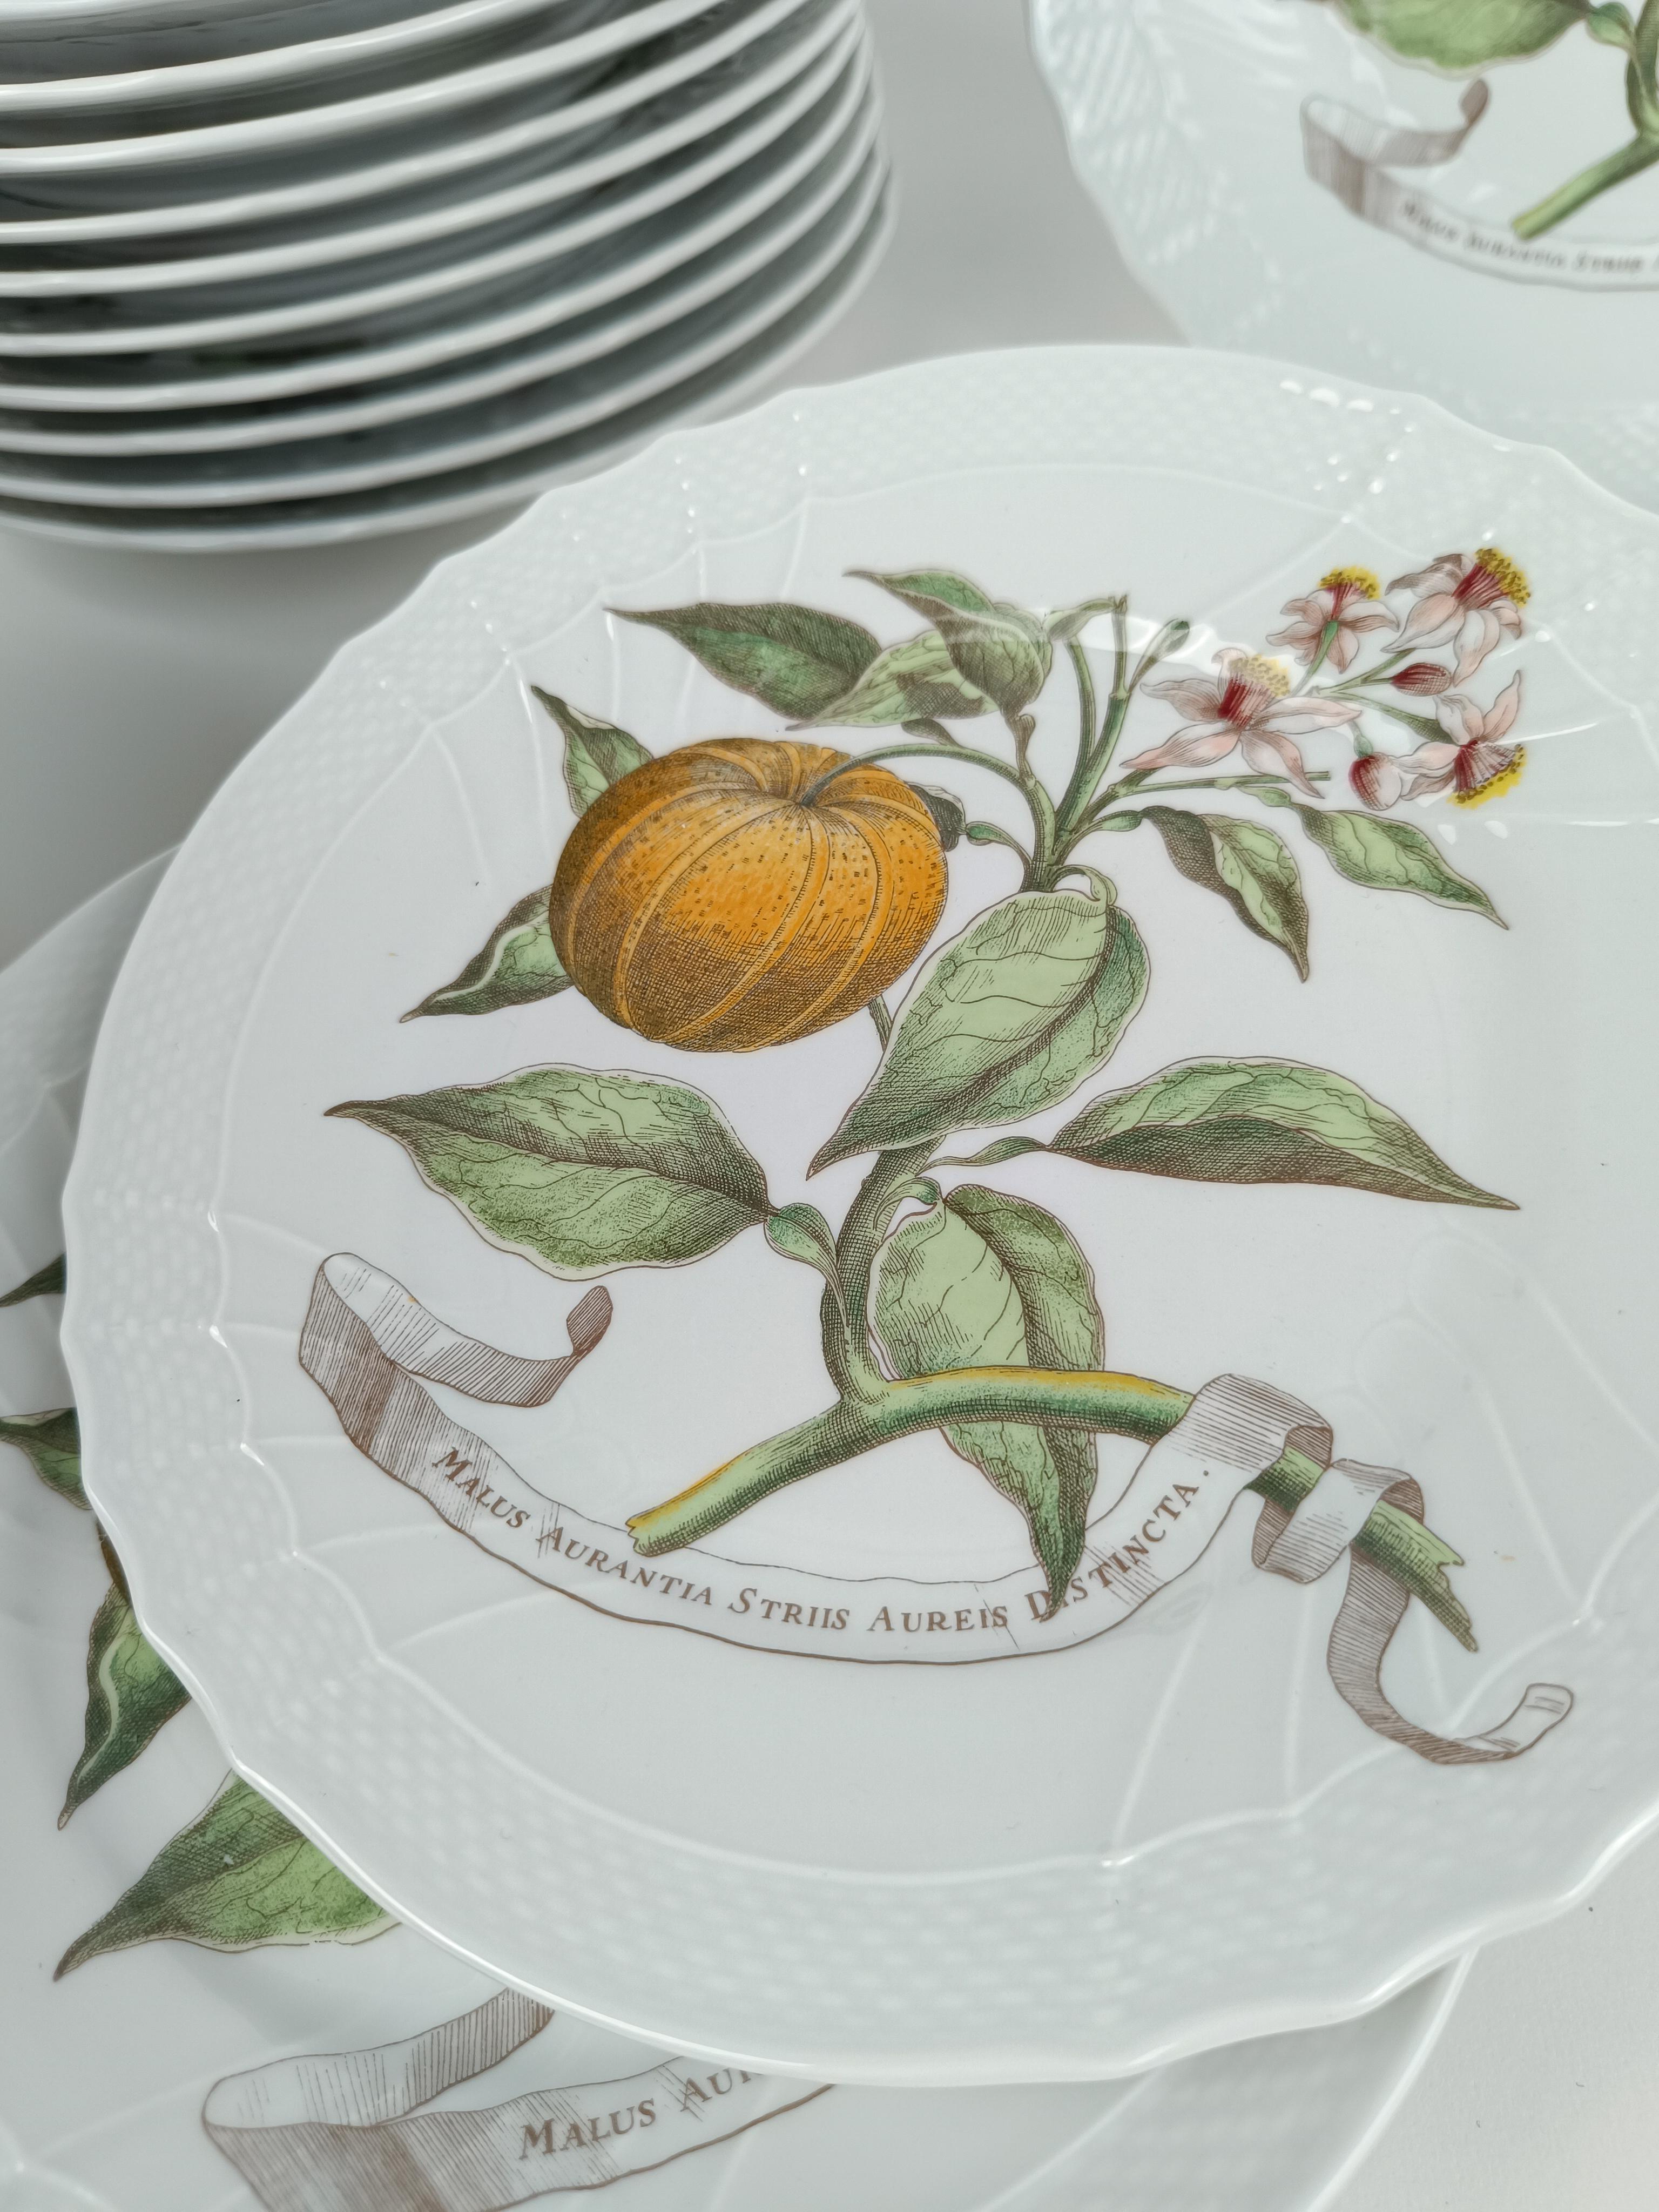 Un service de vaisselle fabriqué en Italie dans les années 80, comme l'atteste la date imprimée au dos de l'assiette, mais inspiré par la porcelaine du XVIIIe siècle, plus précisément par le 